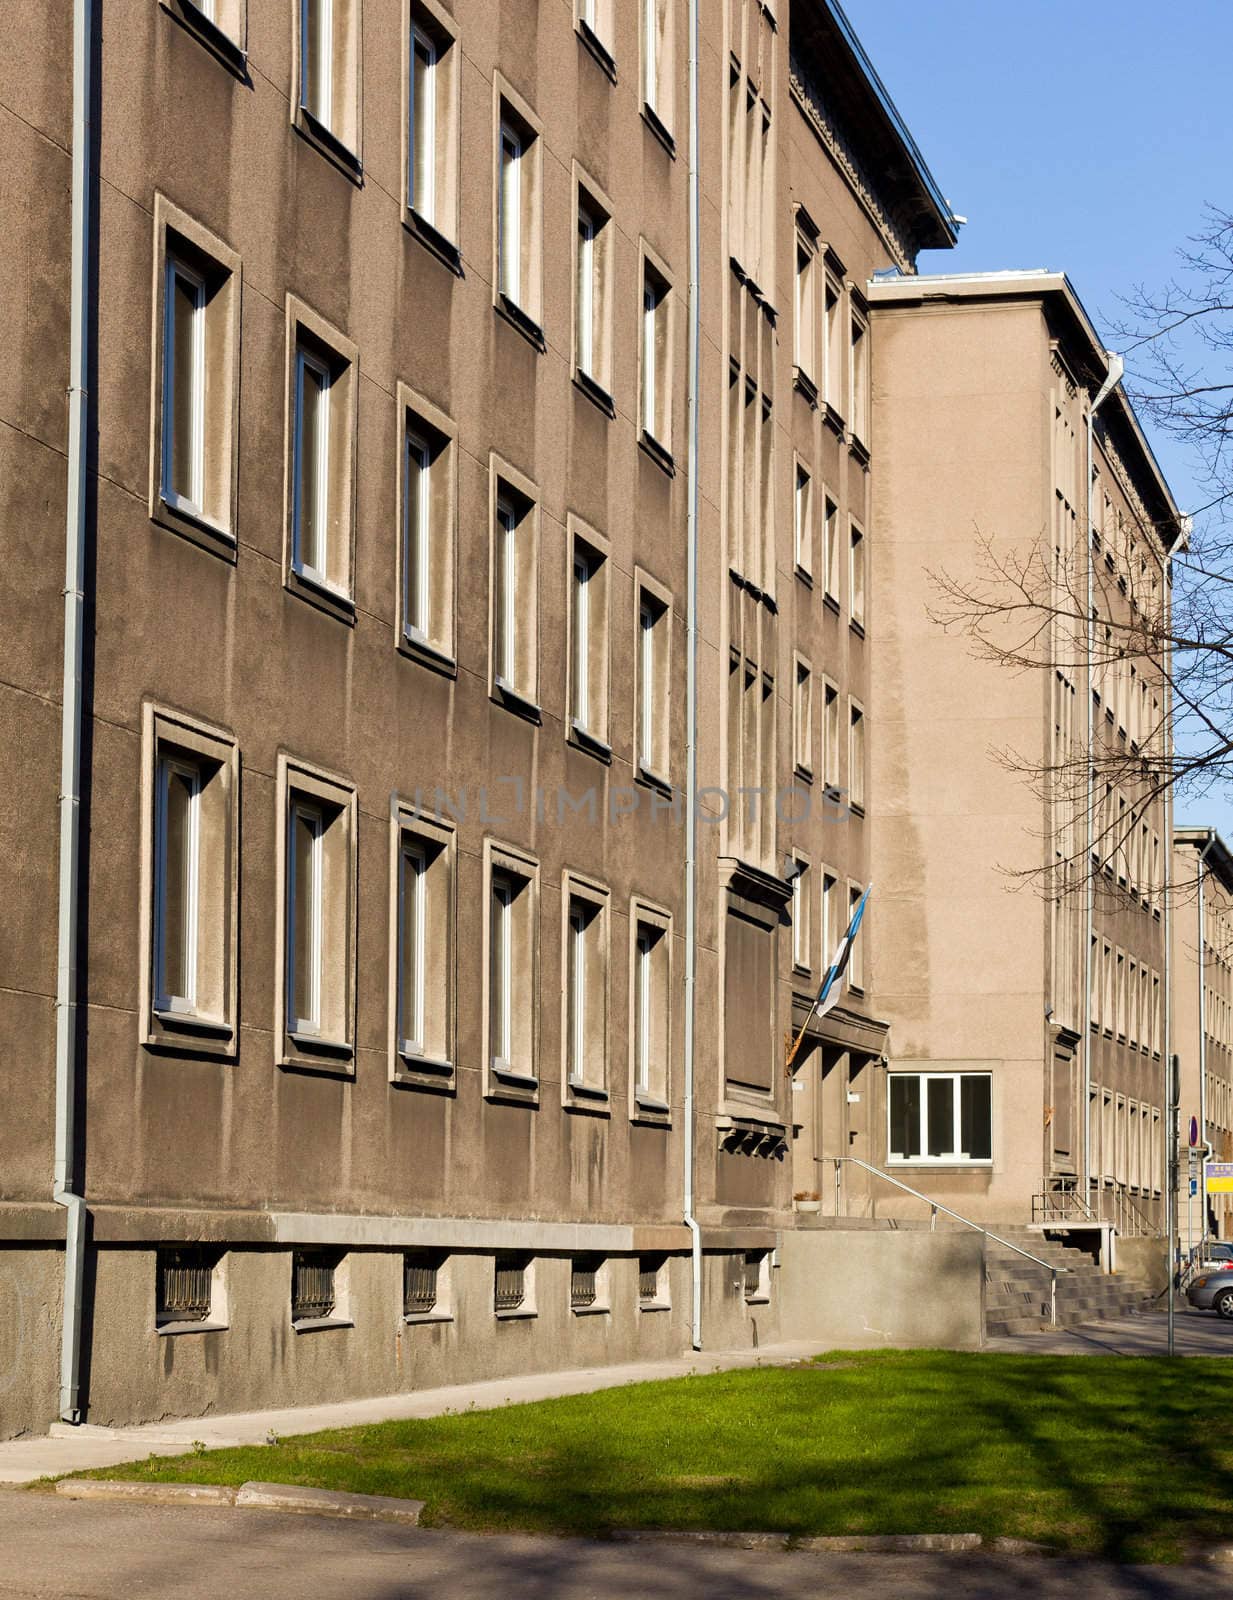 Soviet era office in Tallinn by steheap